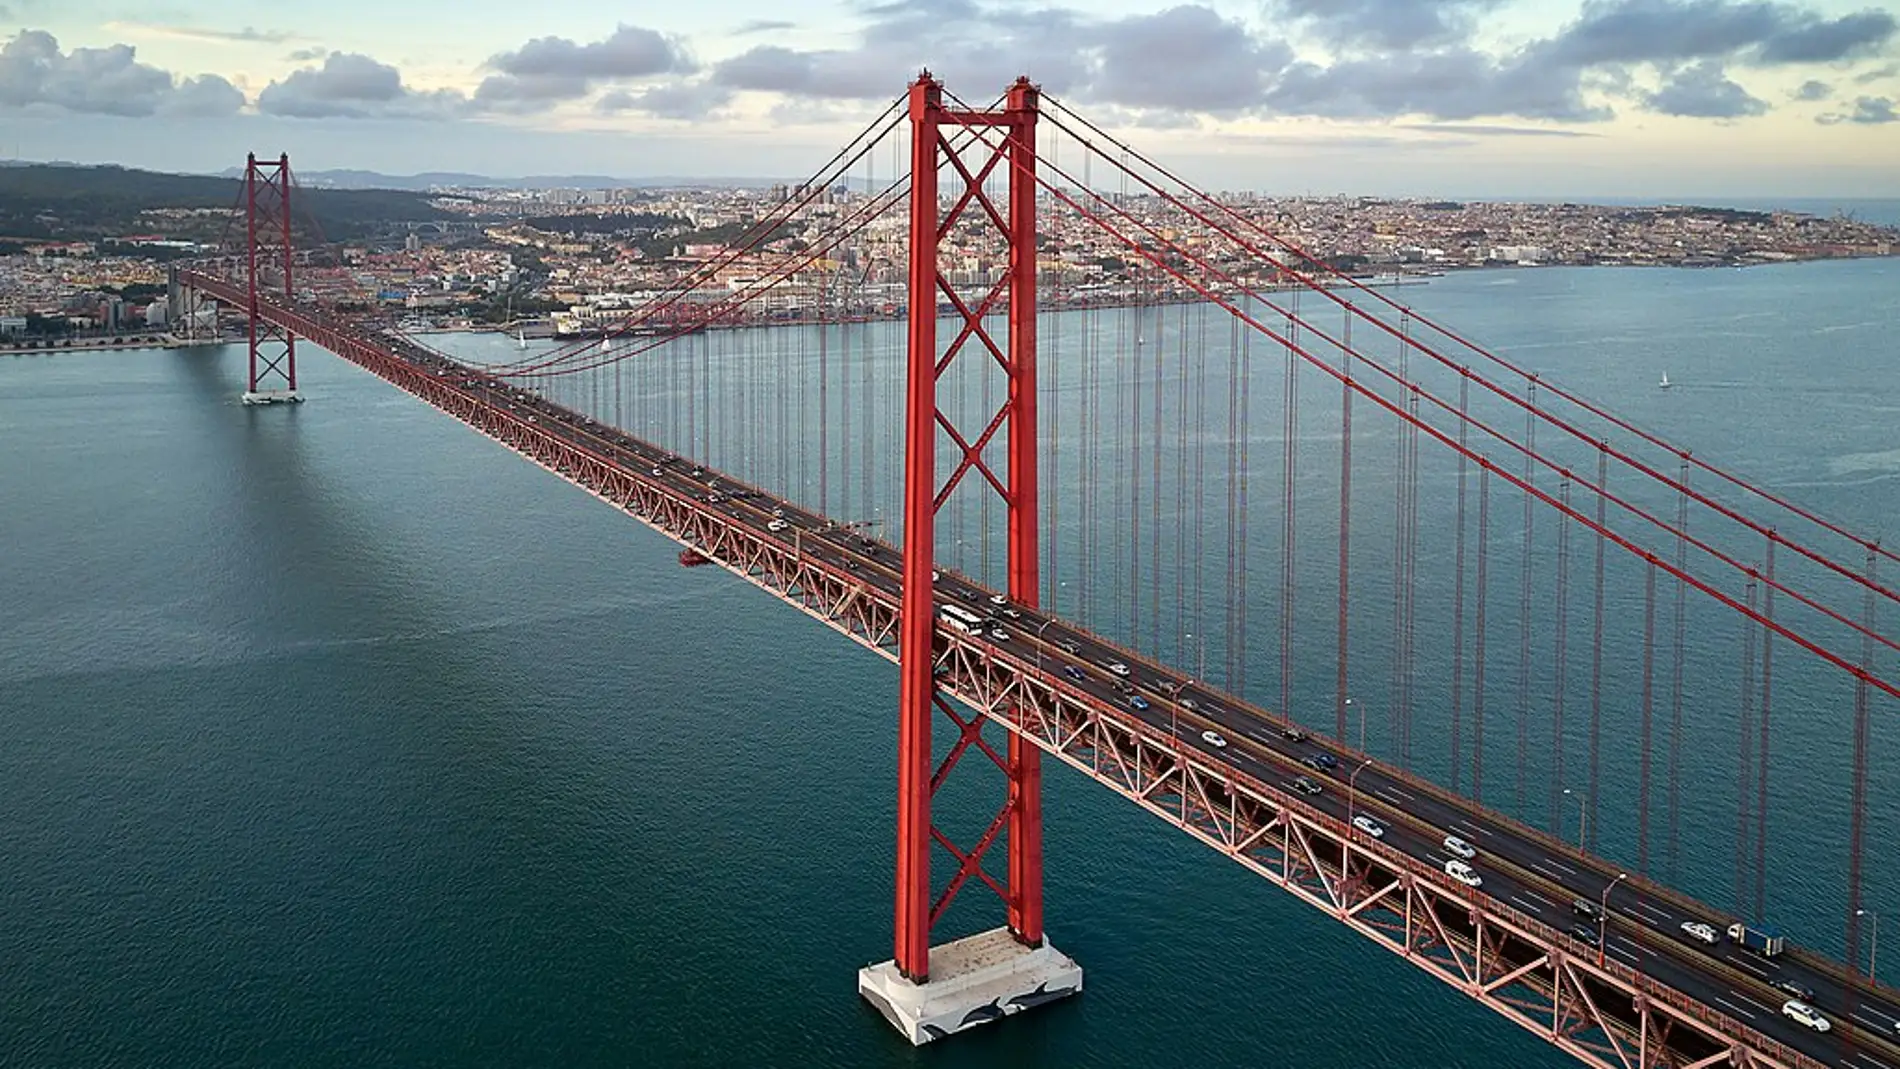 Puente 25 de abril de Lisboa: historia y curiosidades del puente colgante más largo de Europa